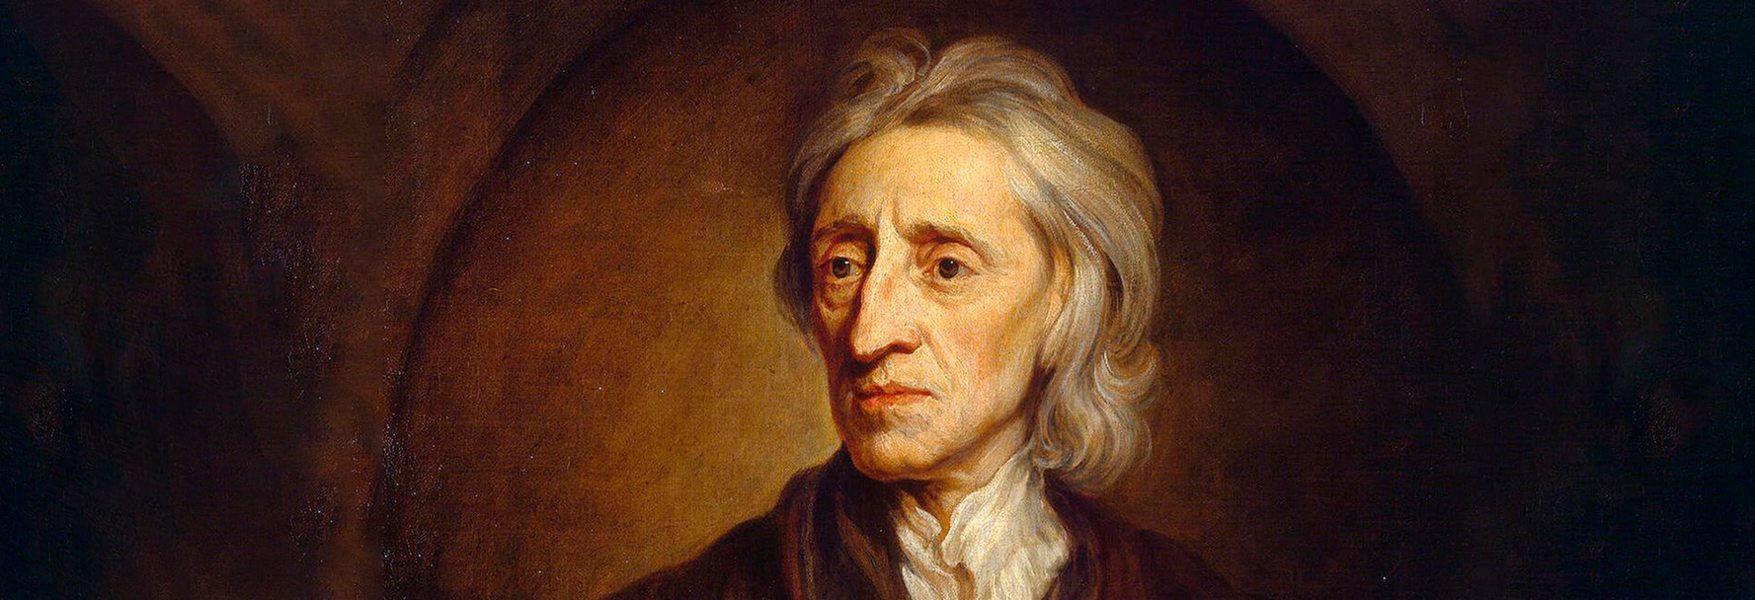 John Locke El Filósofo Que Culminó La Revolución Científica Openmind